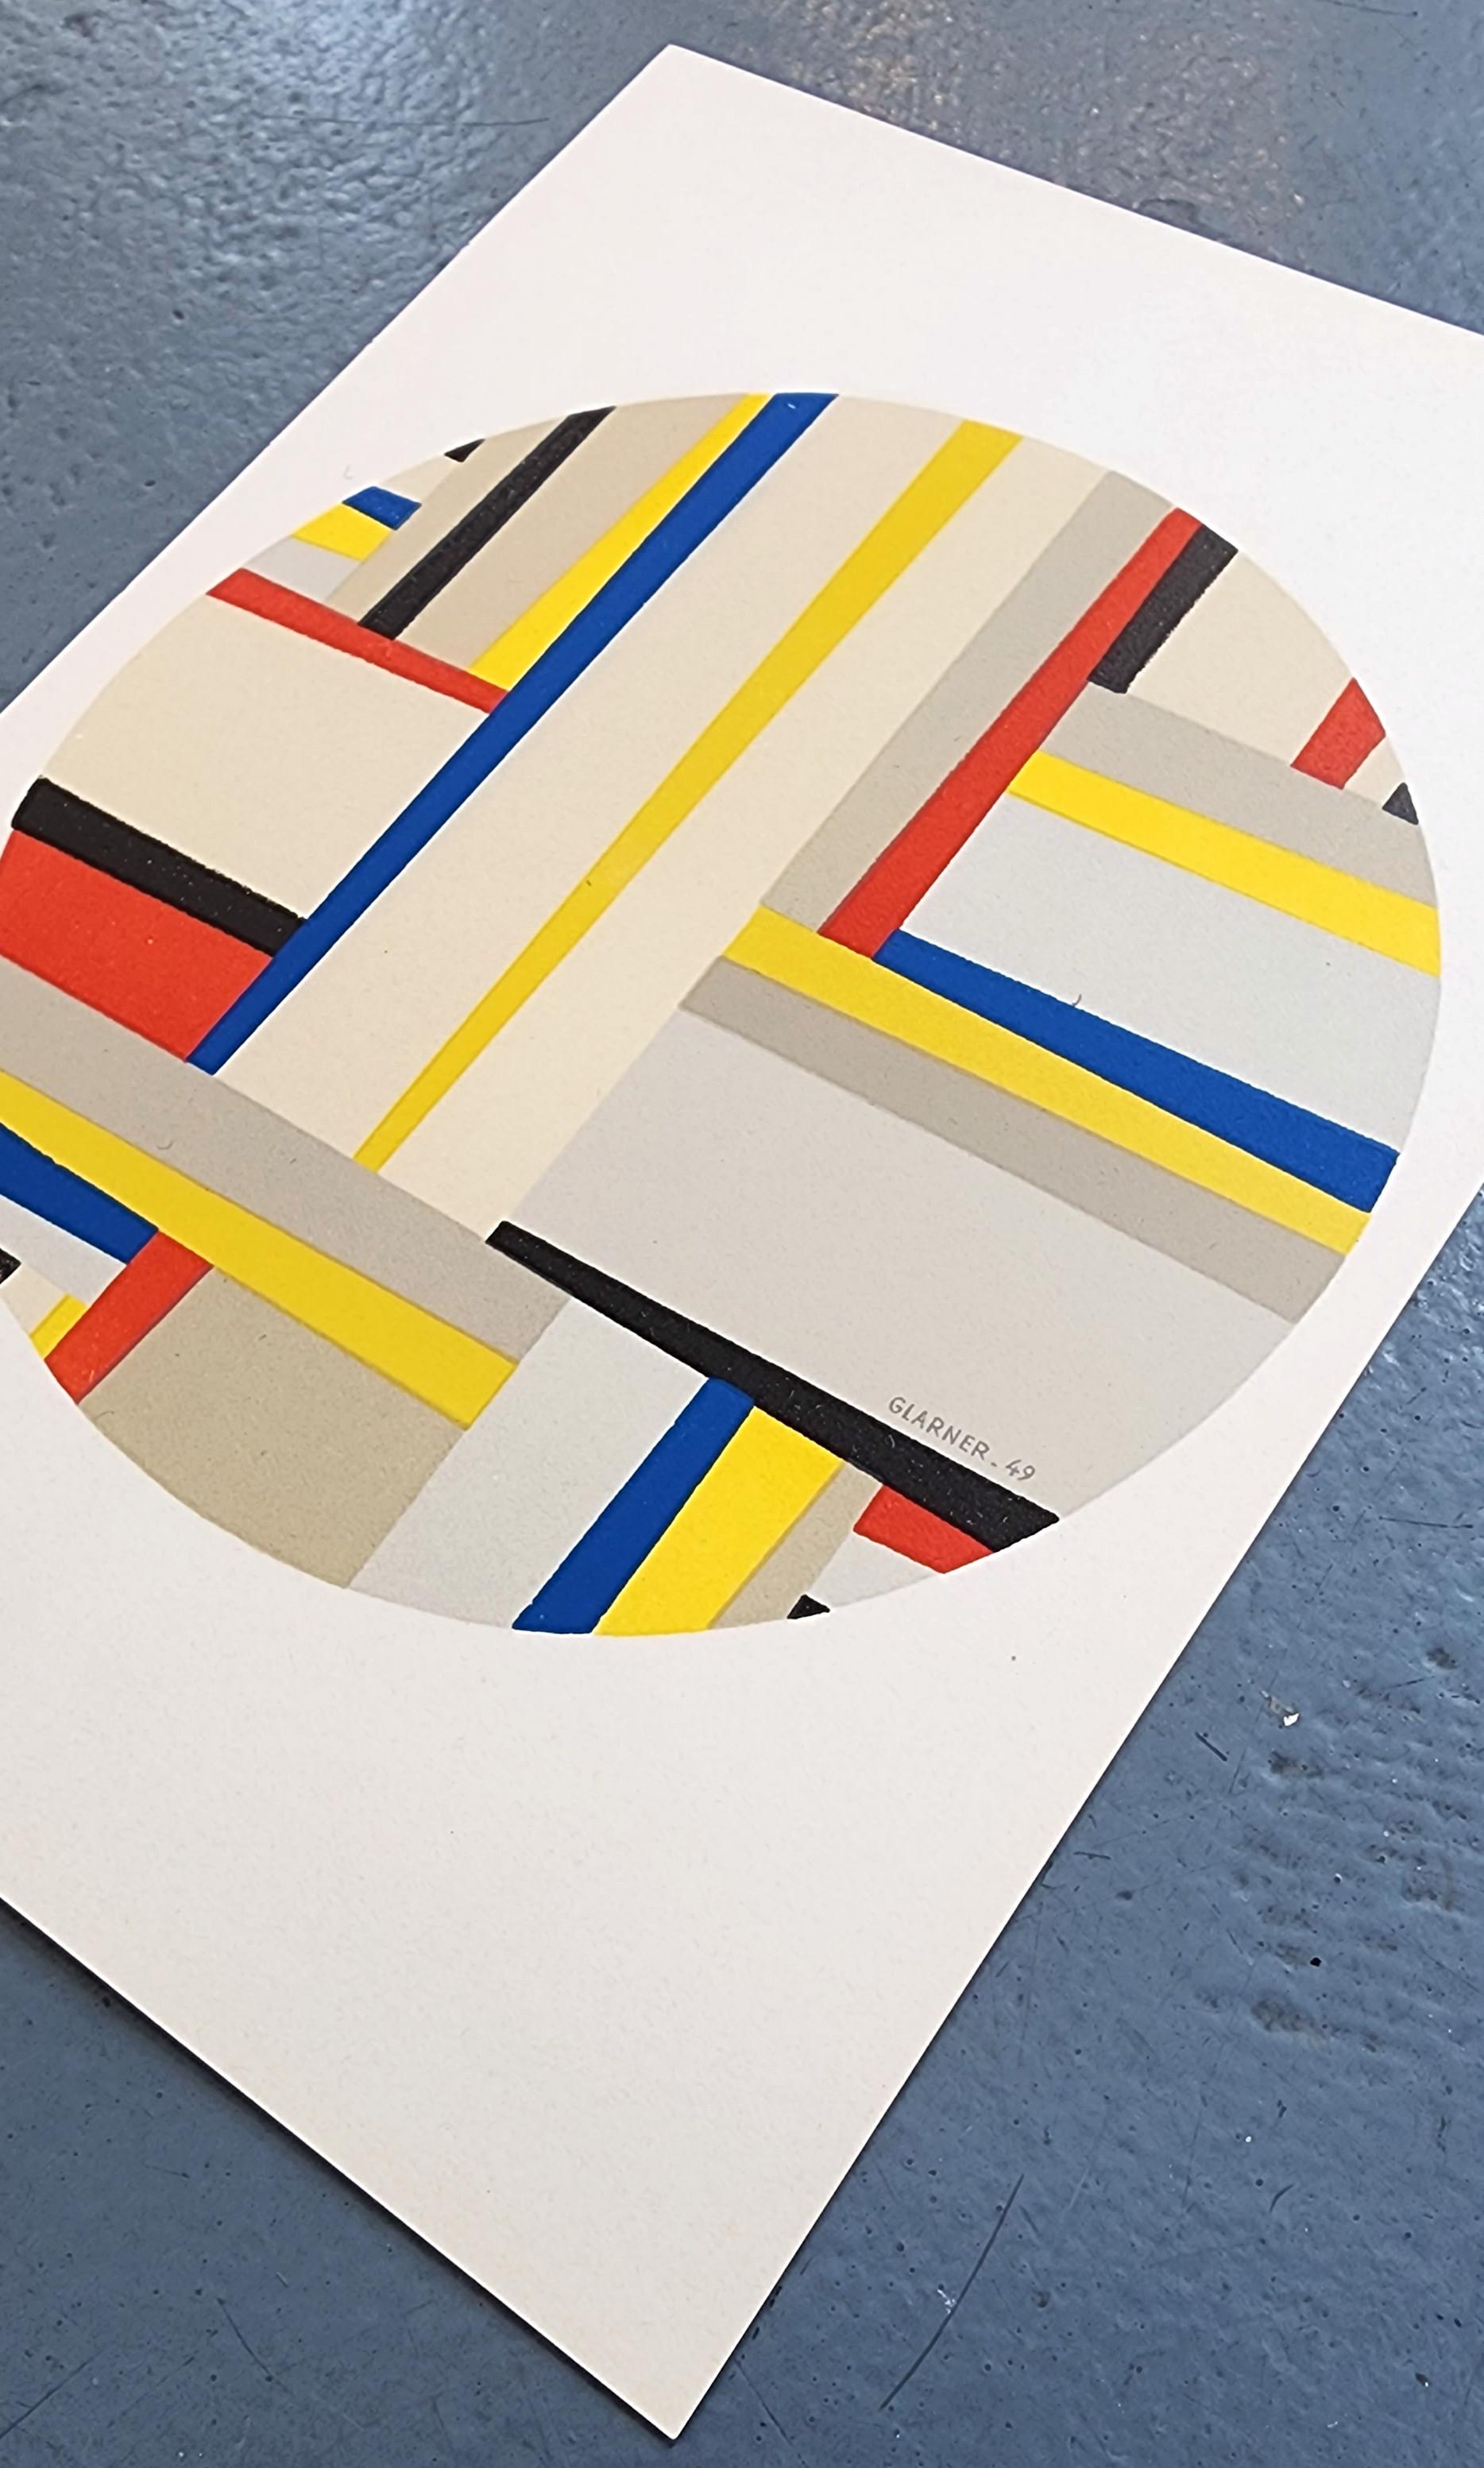 Tondo (Mourlot, Paris, Impression, Design, Moderne, ~30% PRIX DE SOLDE, ÉTAT LIMITÉE) - Print de Fritz Glarner